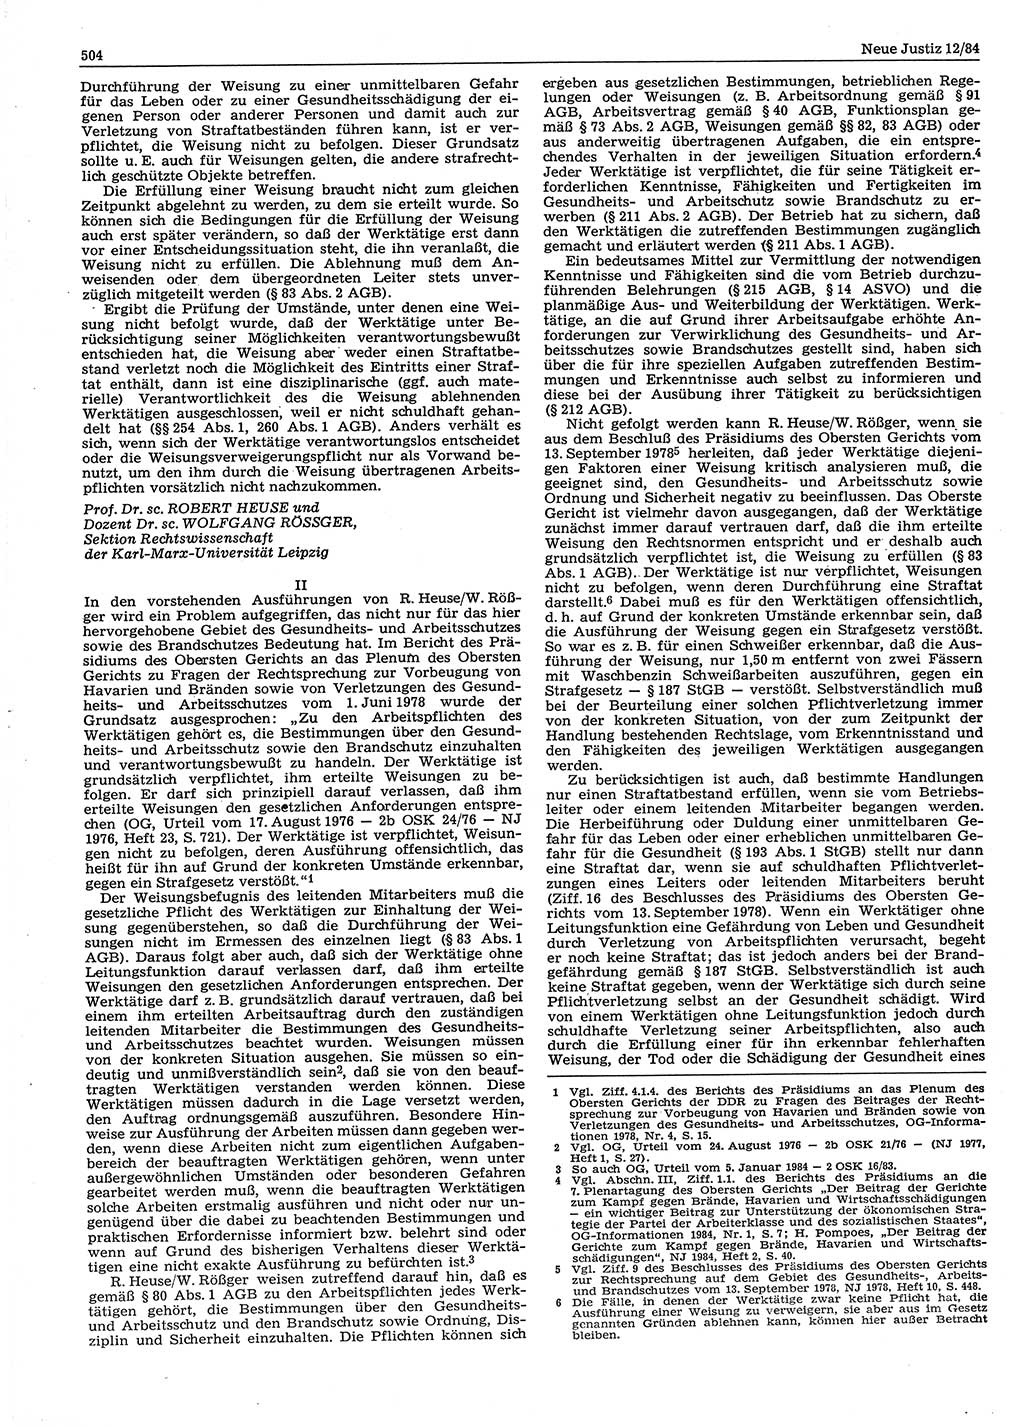 Neue Justiz (NJ), Zeitschrift für sozialistisches Recht und Gesetzlichkeit [Deutsche Demokratische Republik (DDR)], 38. Jahrgang 1984, Seite 504 (NJ DDR 1984, S. 504)